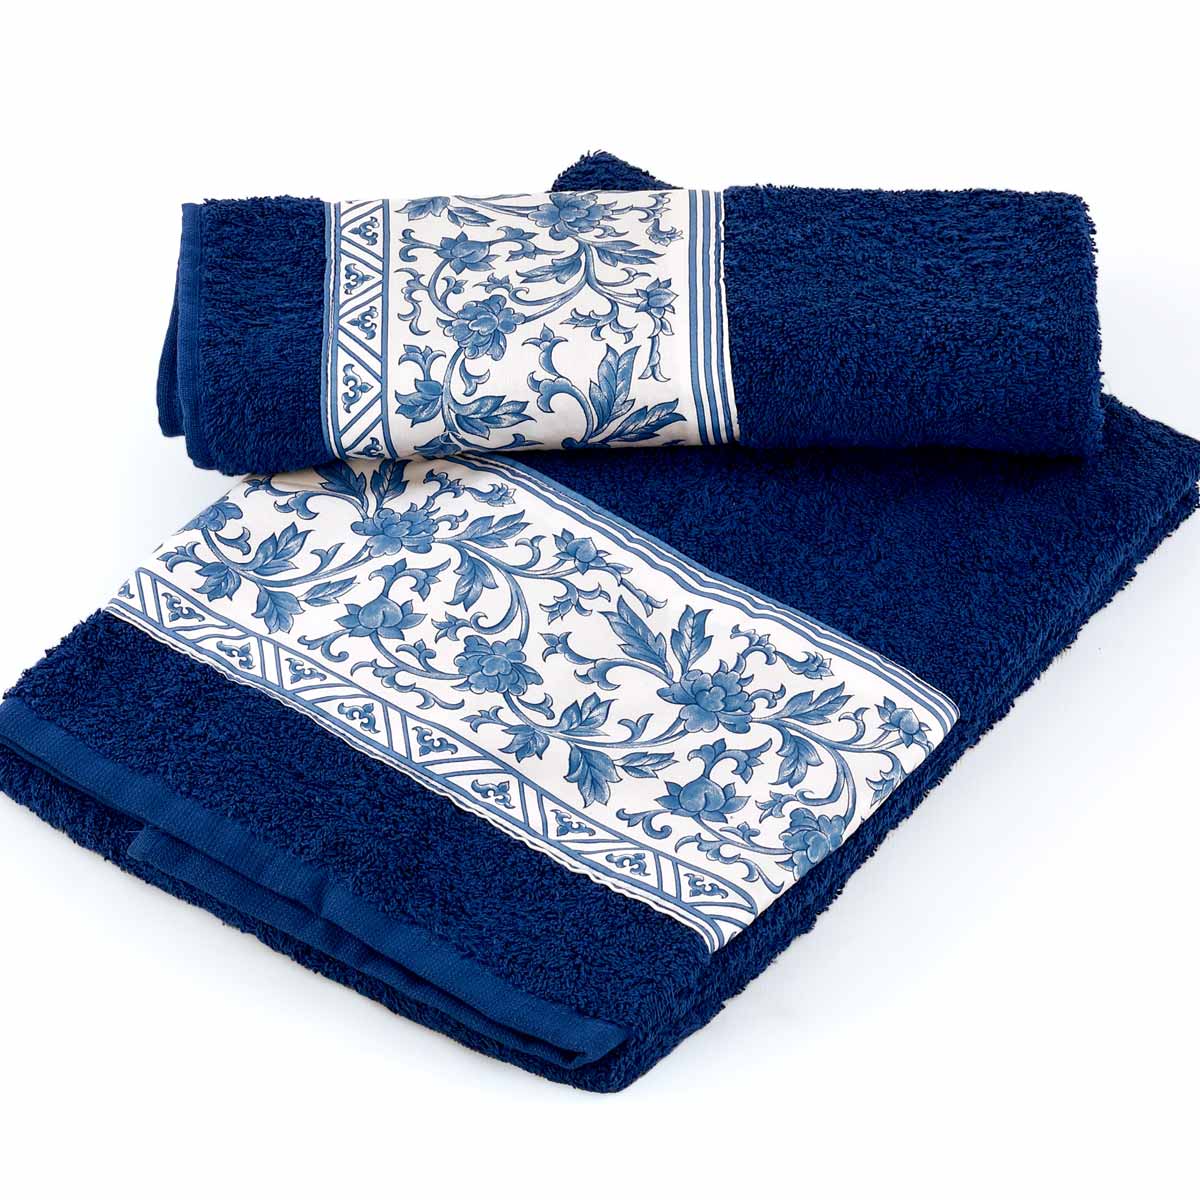 Coppia asciugamani bagno di colore blu con balza in raso a Fiori